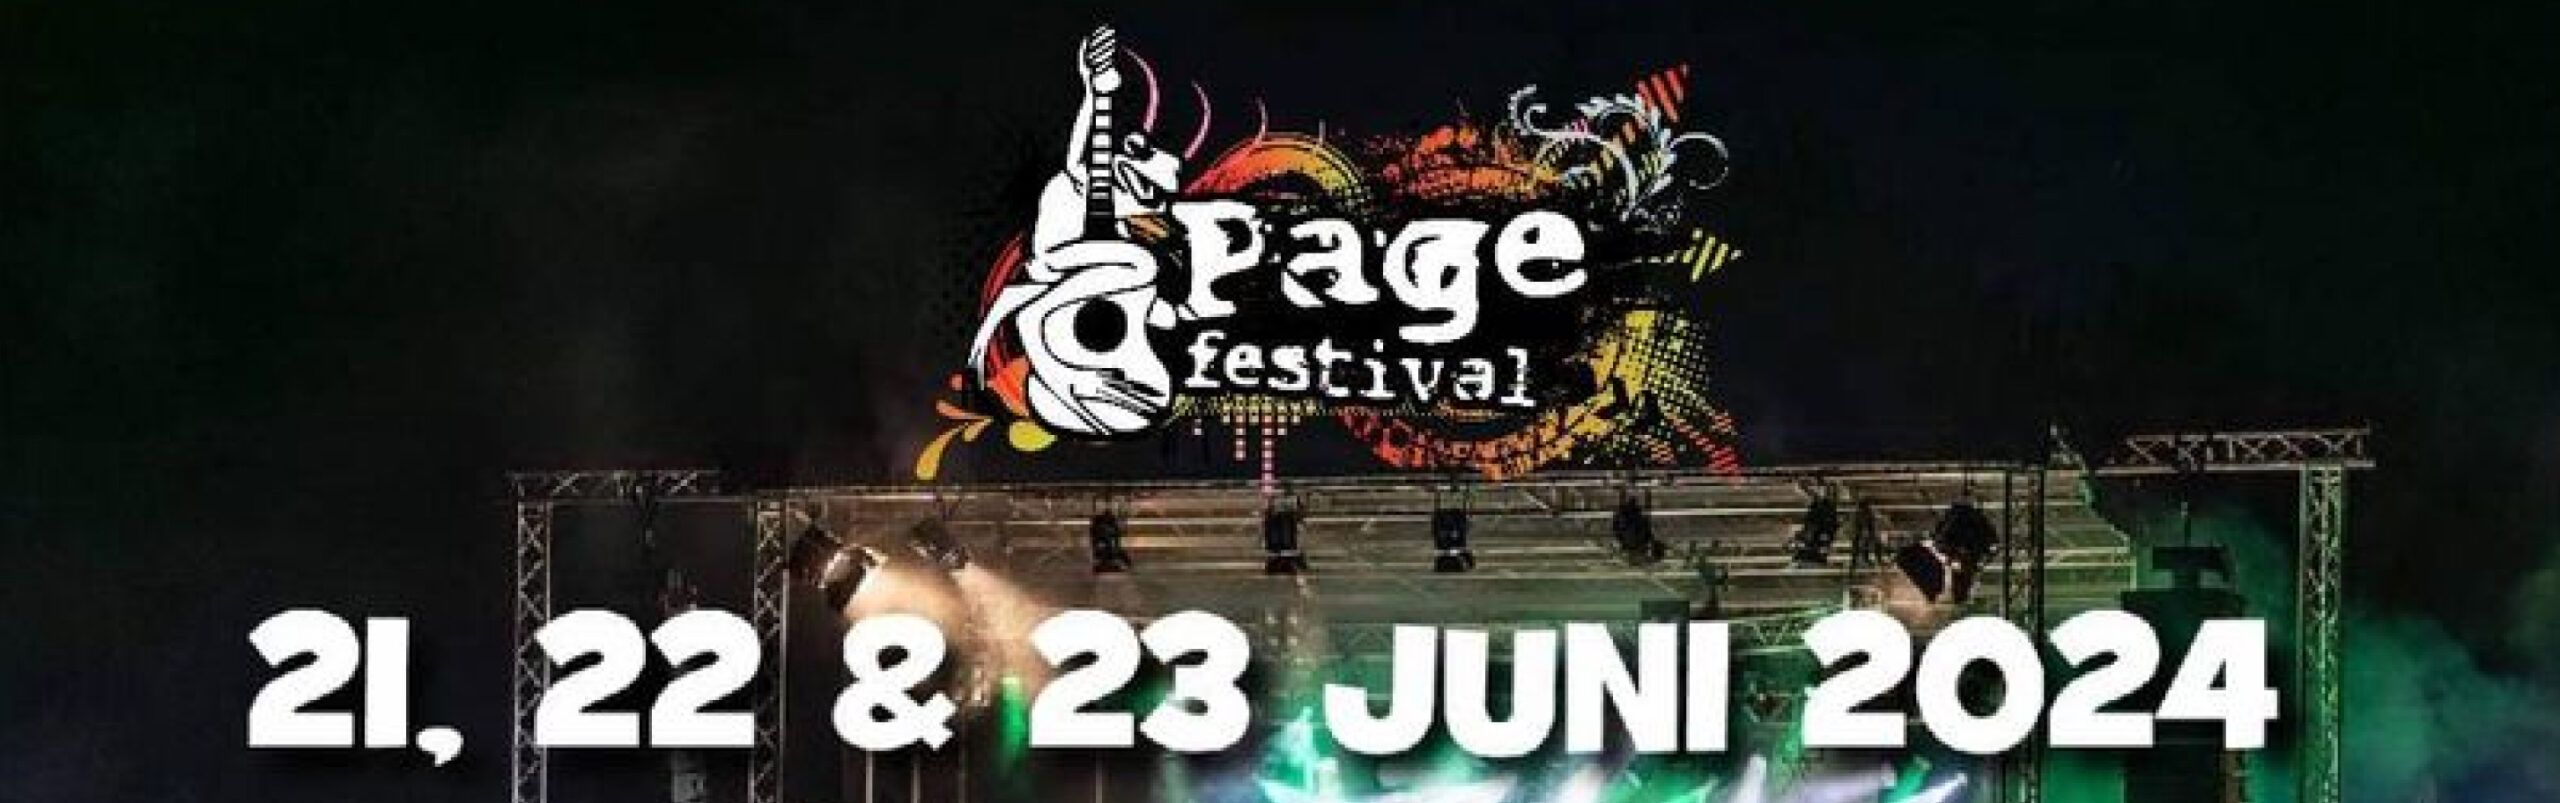 Pagefestival header